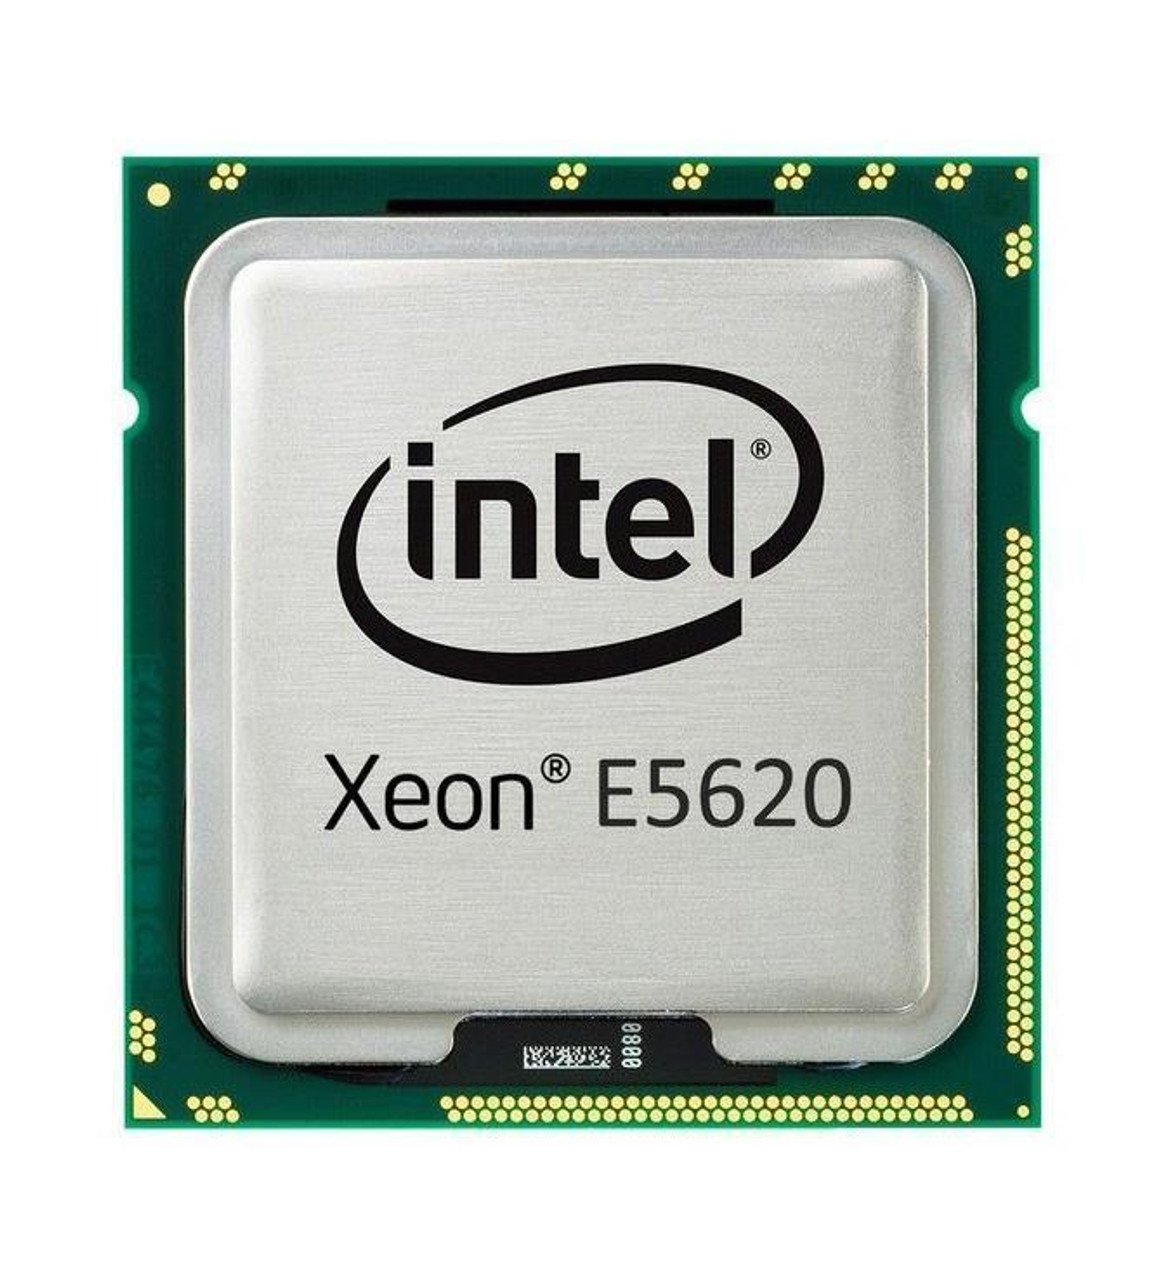 XEON-E5620 Intel Xeon E5620 Quad-Core 2.40GHz 5.86GT/s QPI 12MB L3 Cache Socket LGA1366 Processor